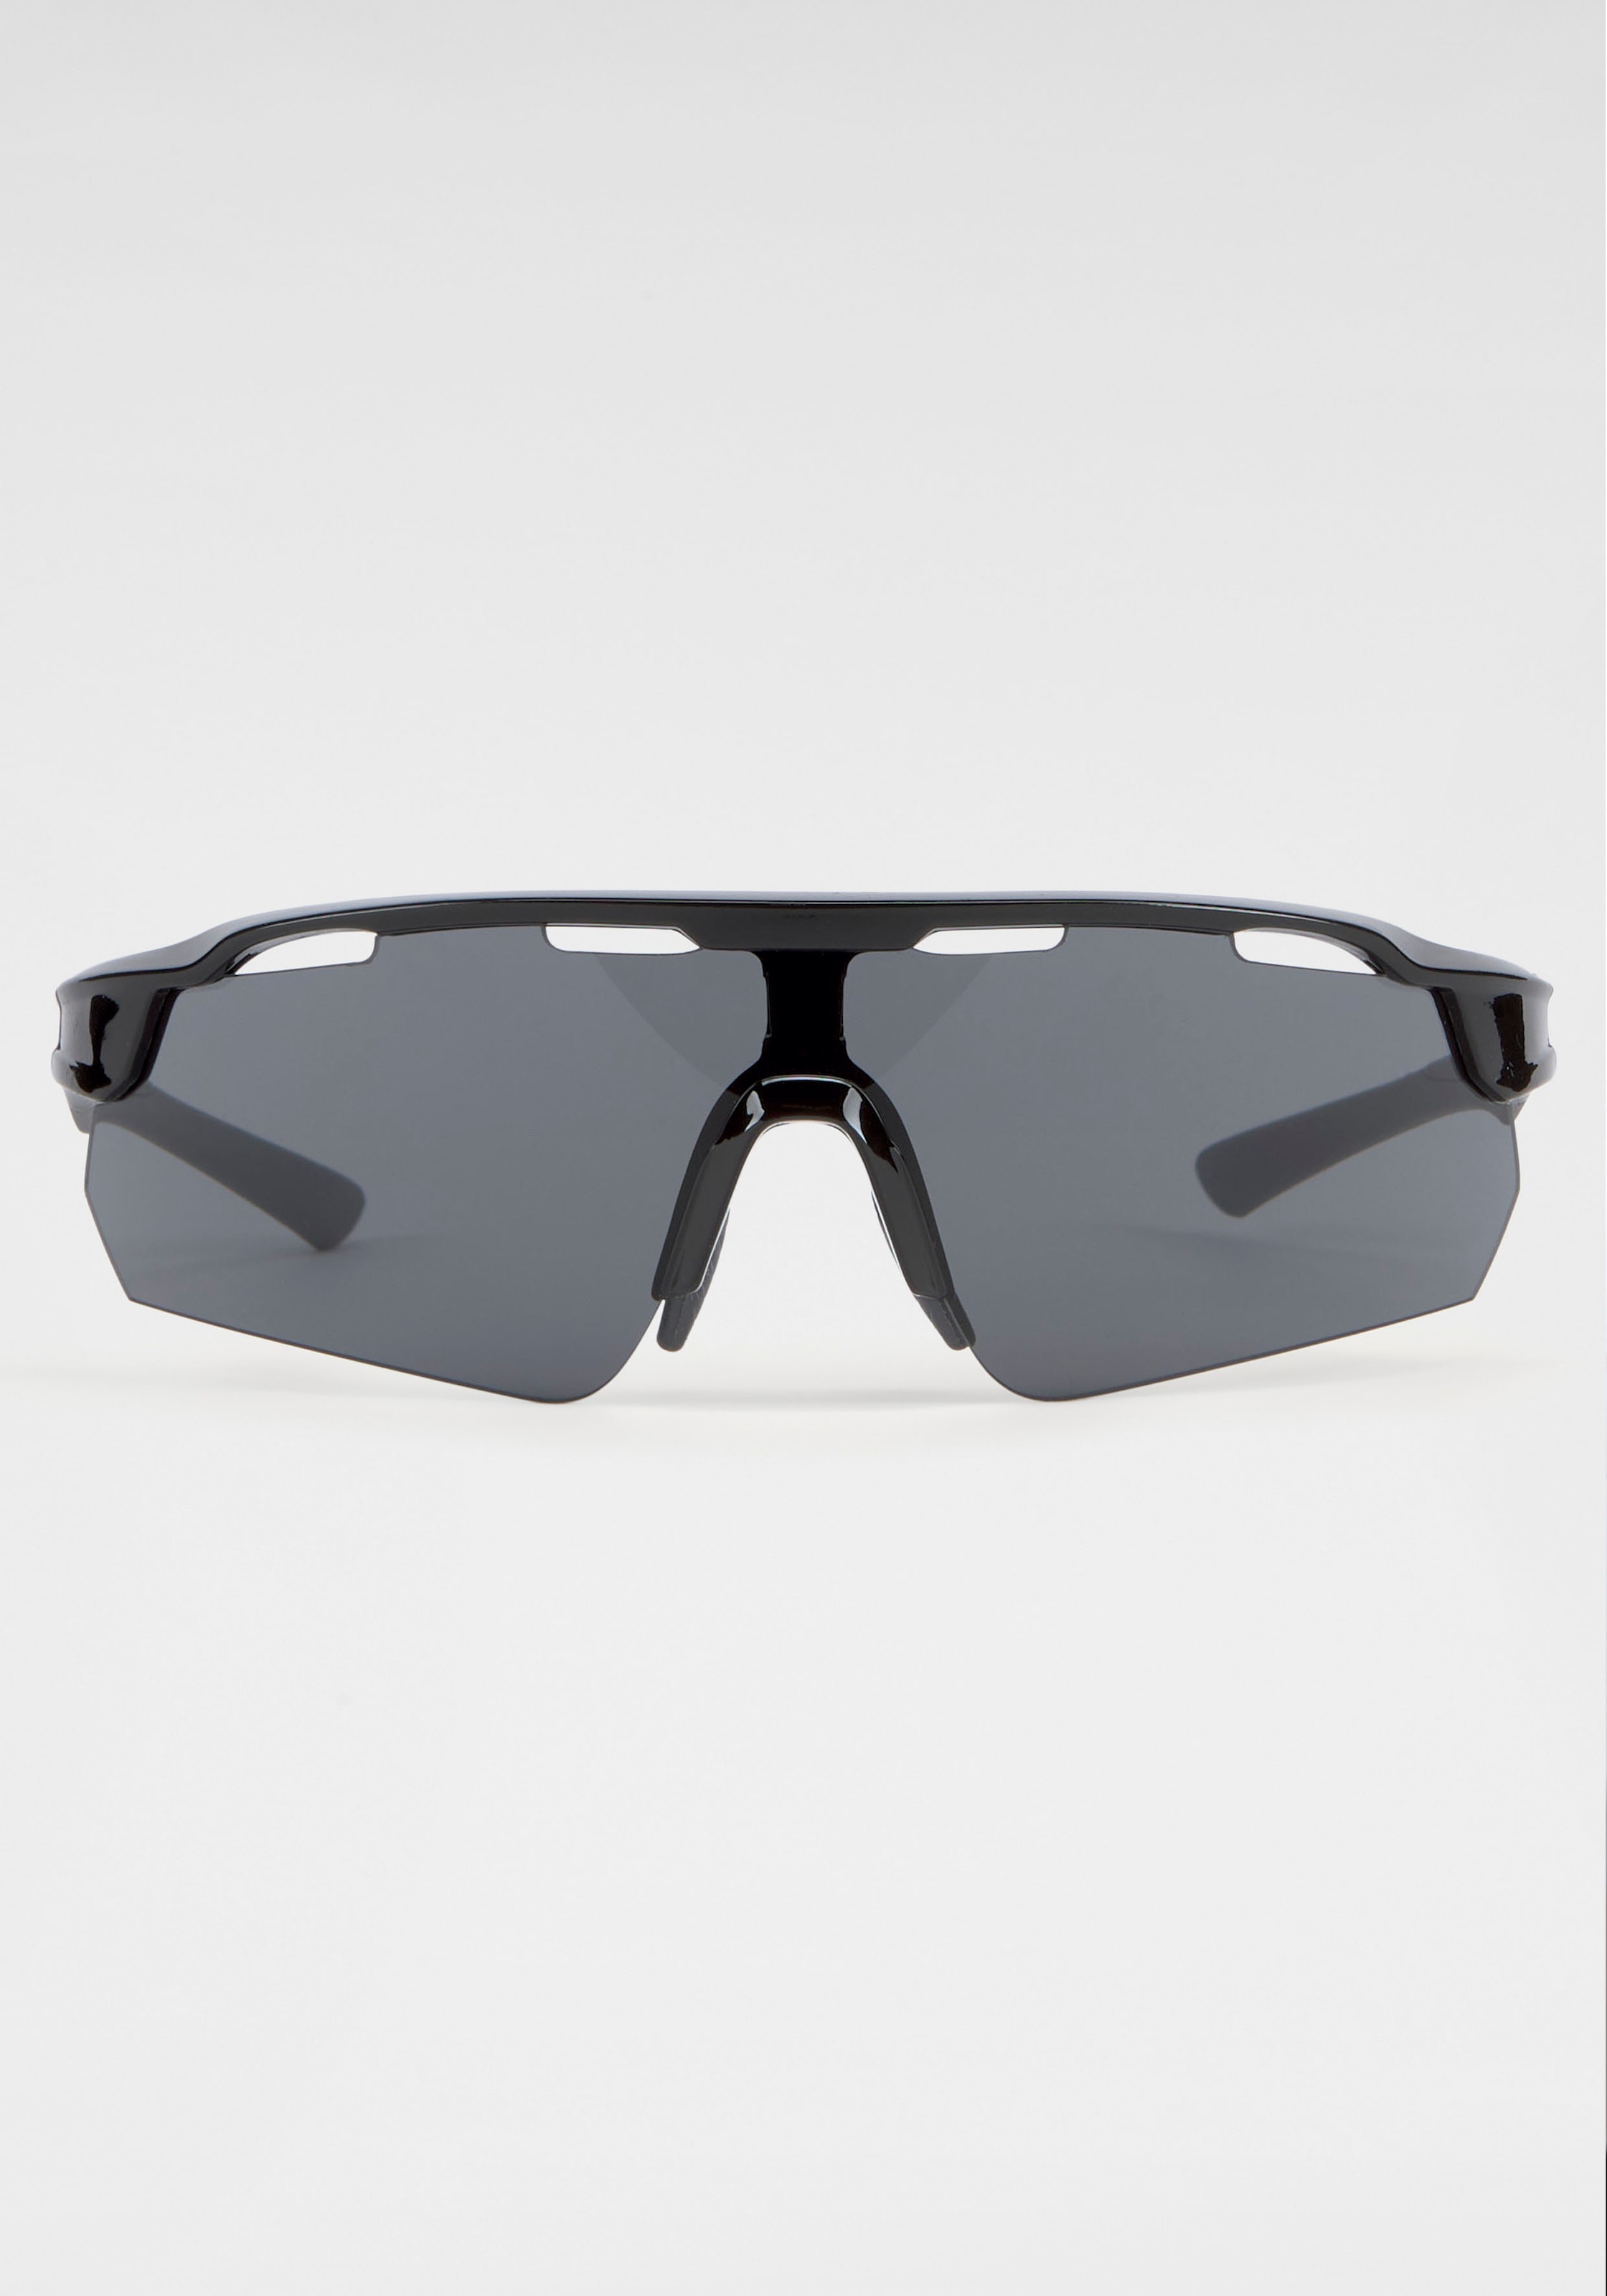 mit online Bench. verspiegelten Sonnenbrille, Gläsern kaufen